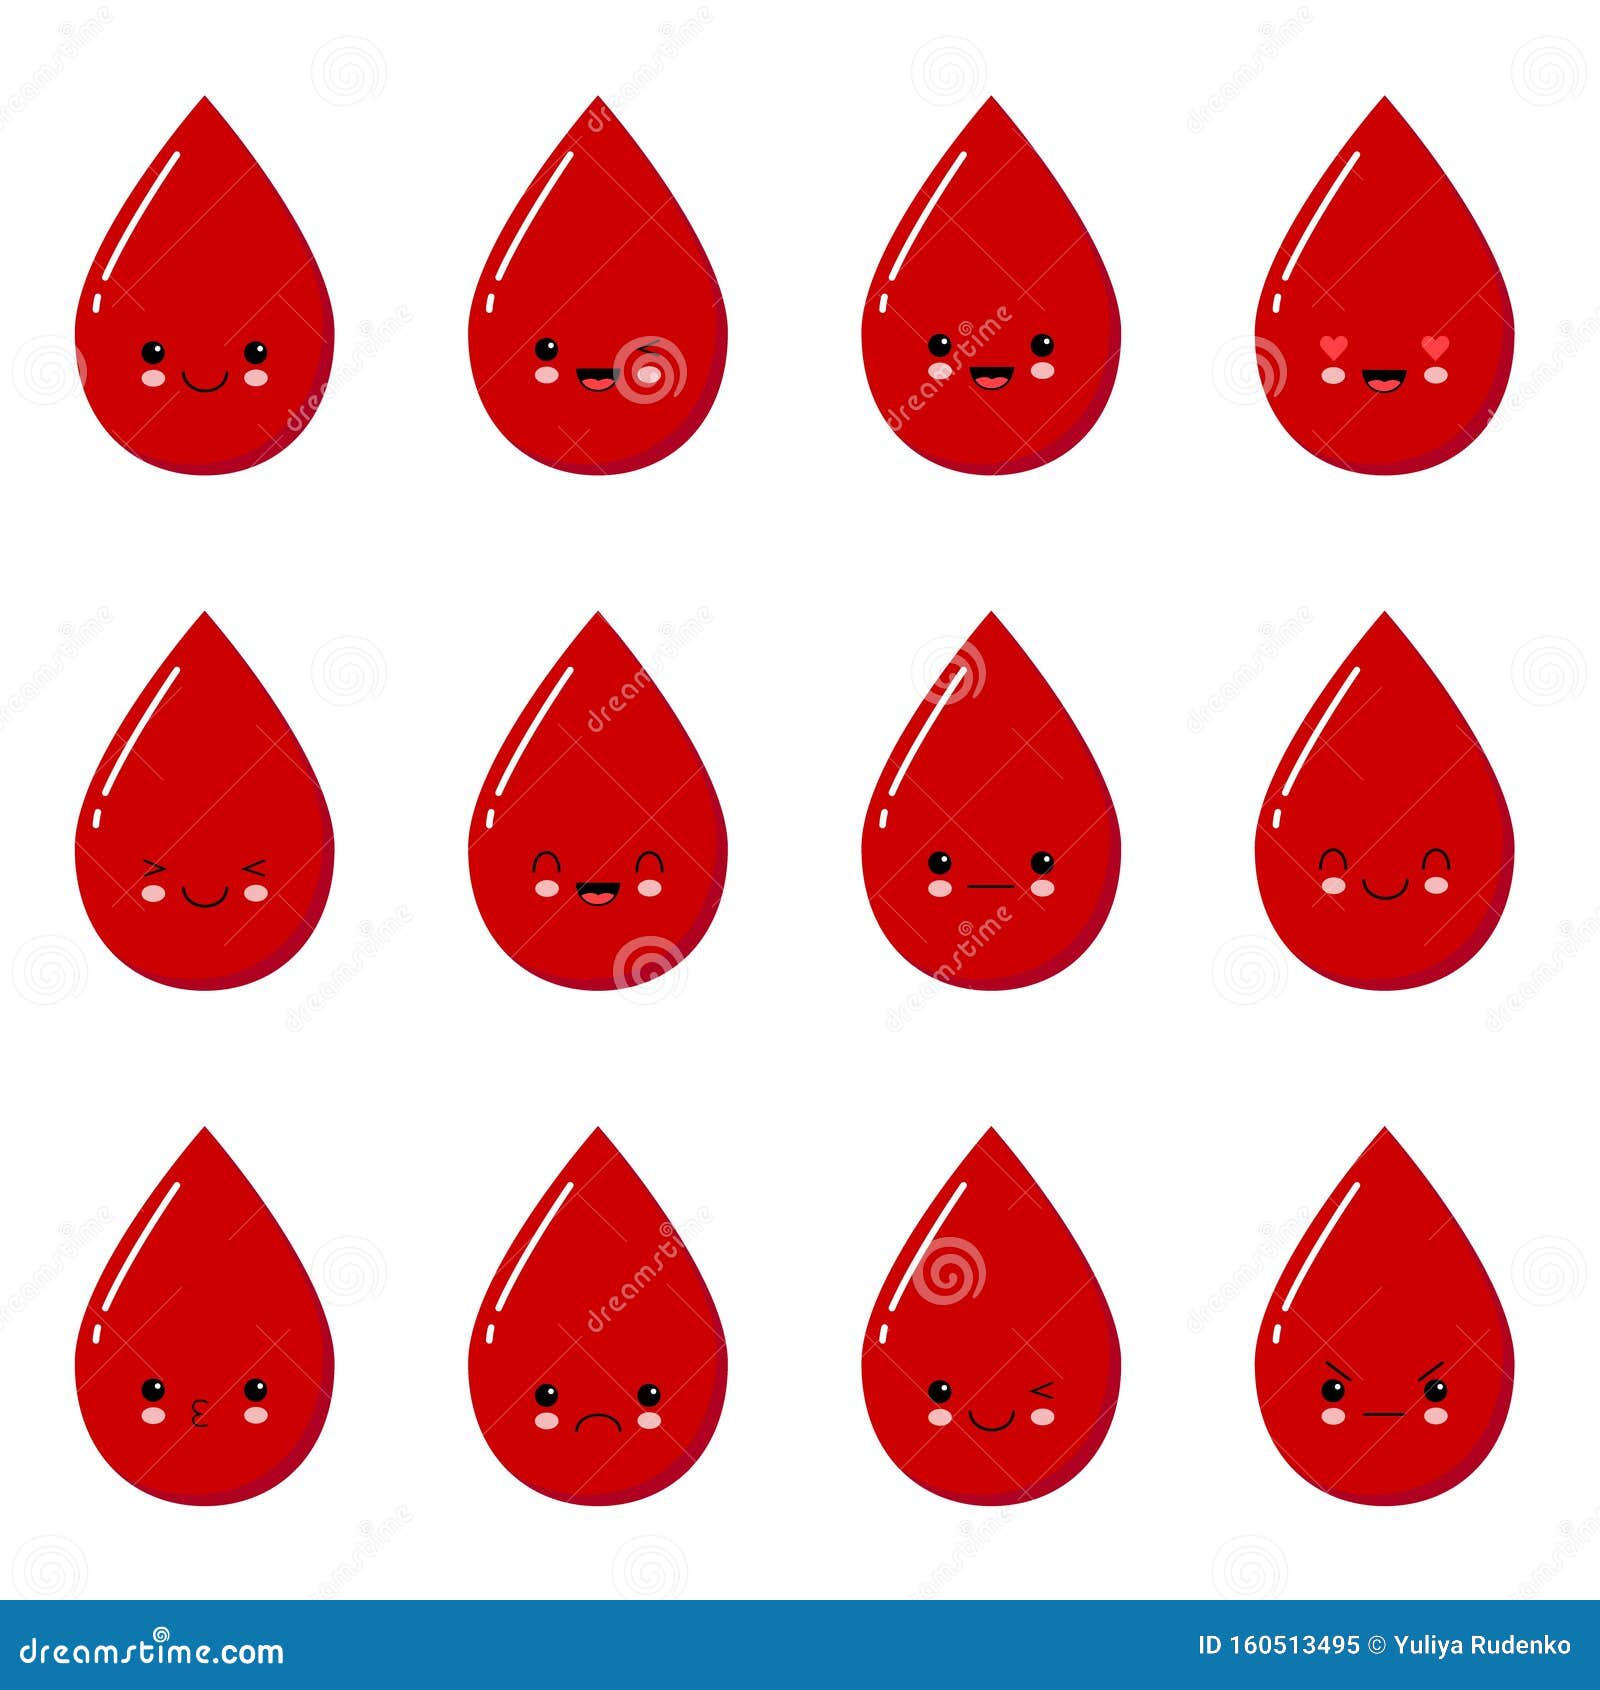 血滴卡通图片素材免费下载 - 觅知网